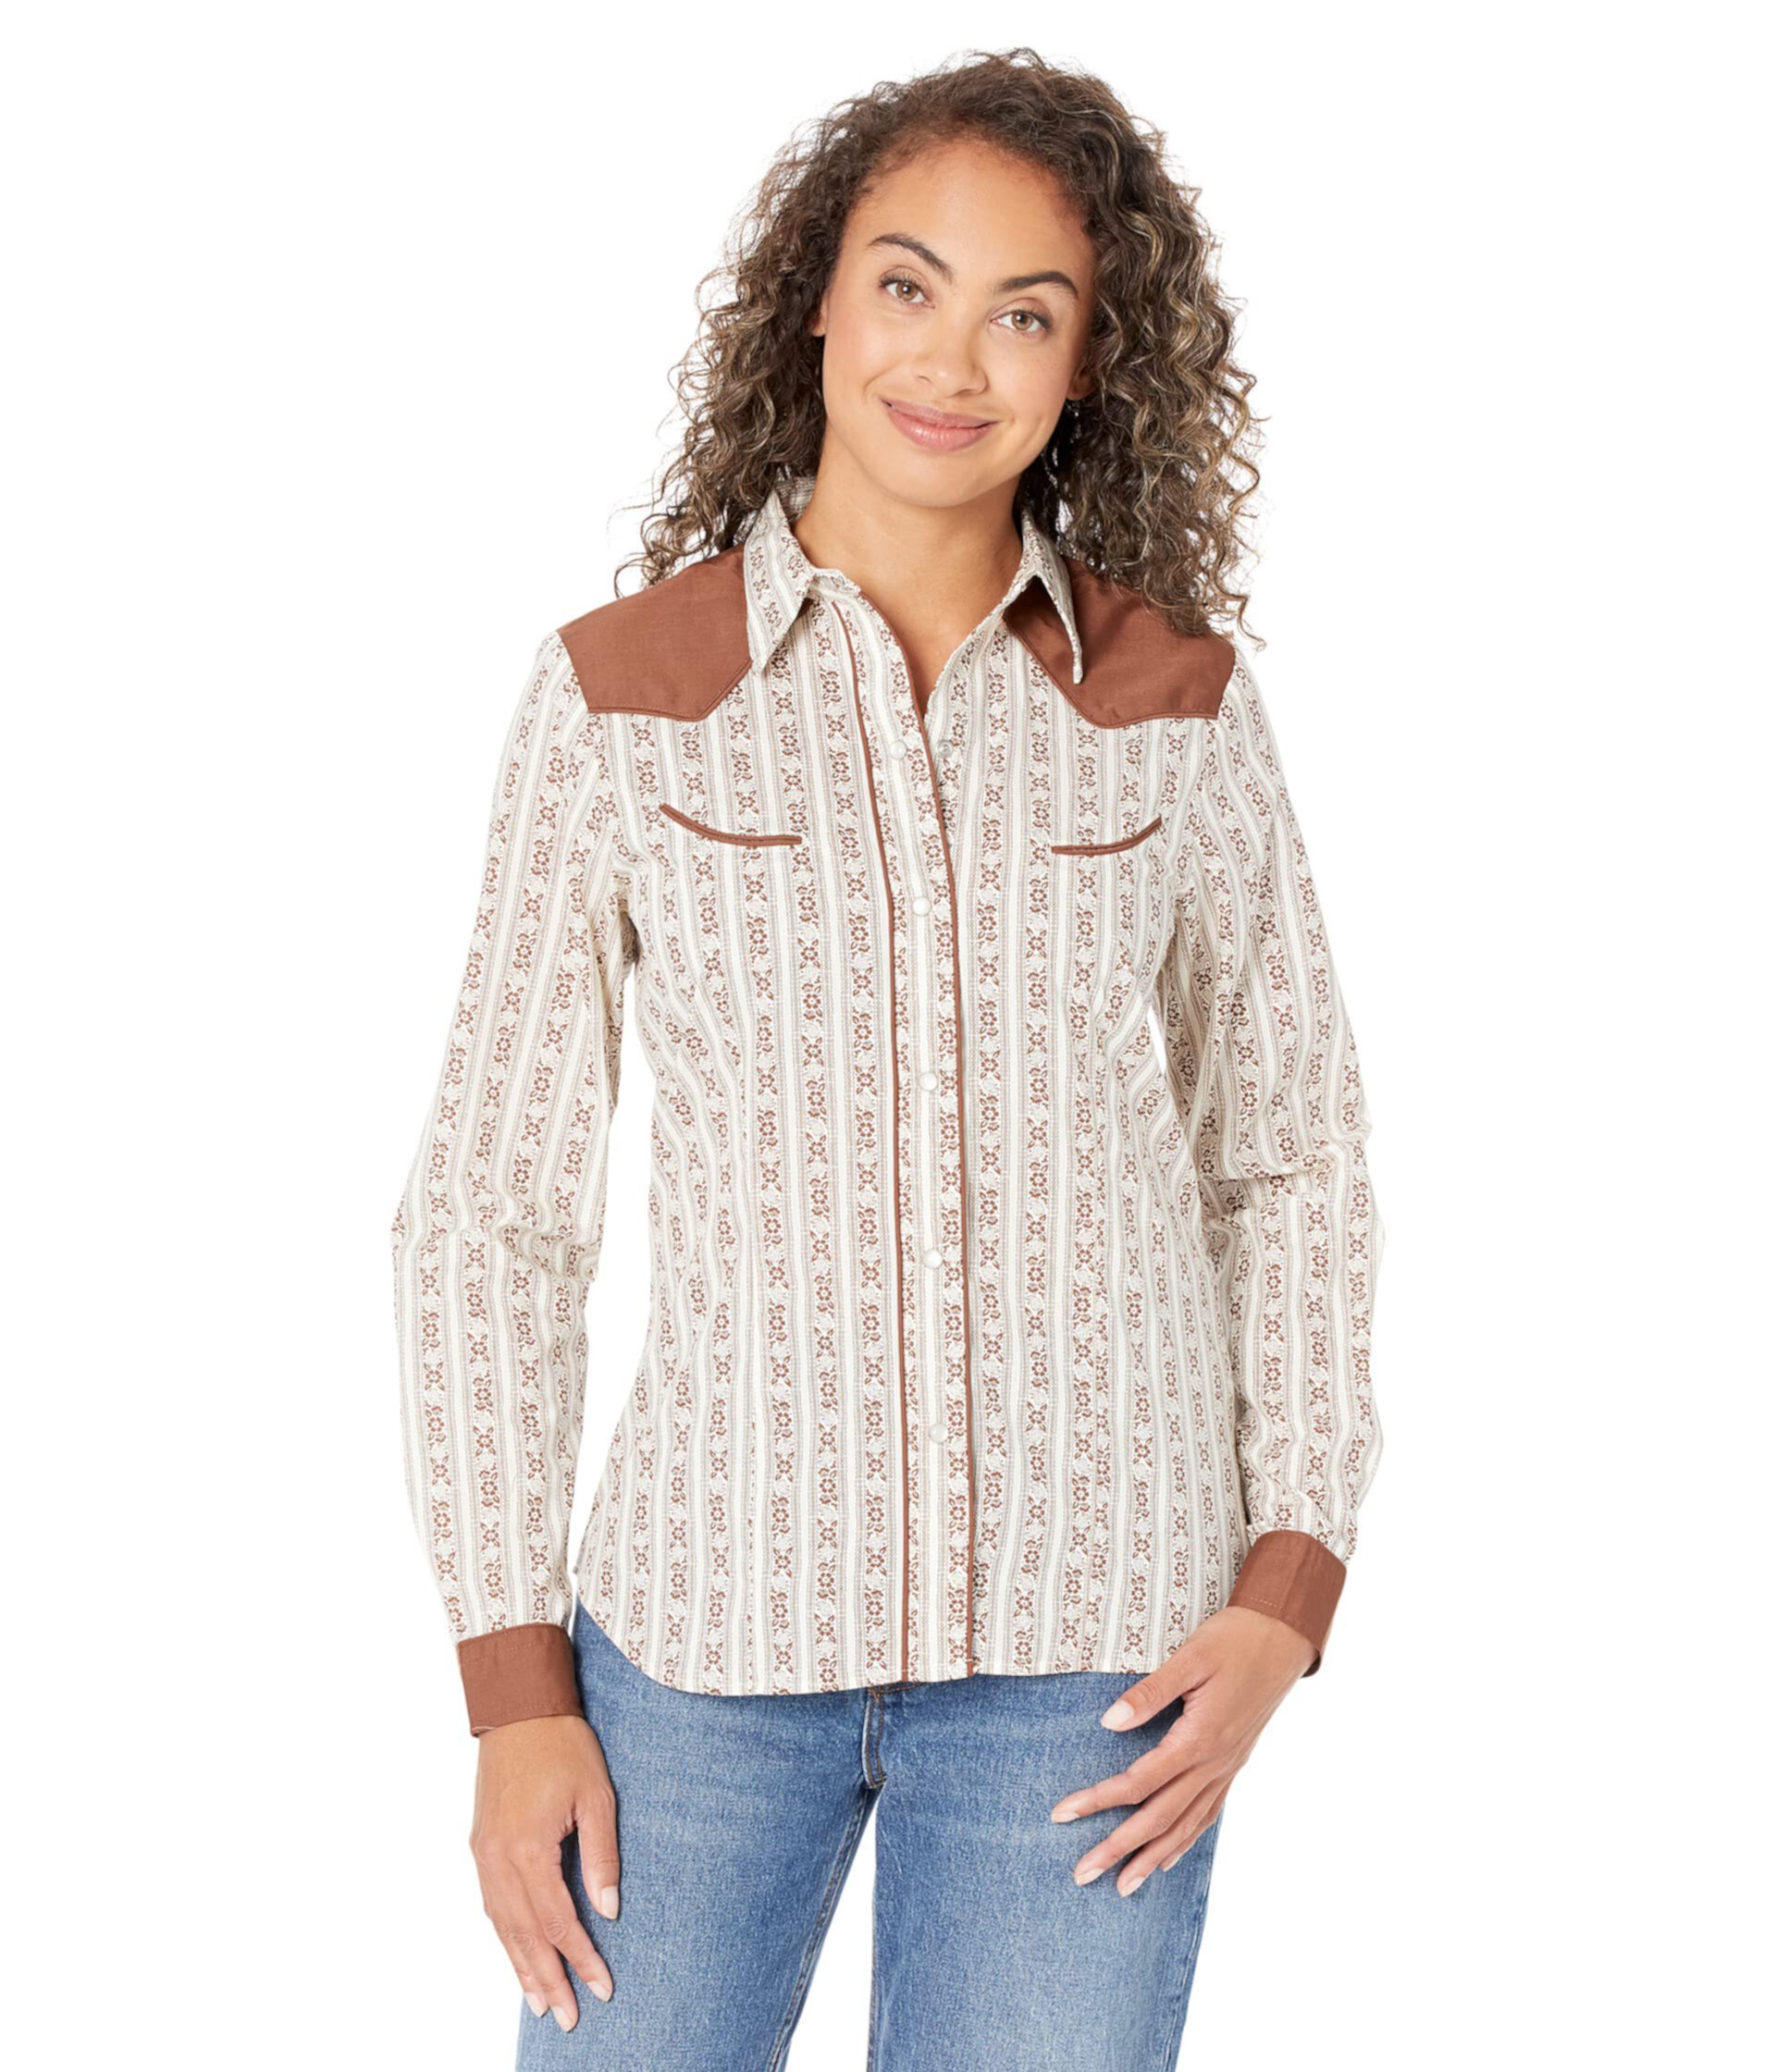 Блузка в стиле вестерн с контрастной контрастной кокеткой кремового и коричневого цветов в полоску Roper